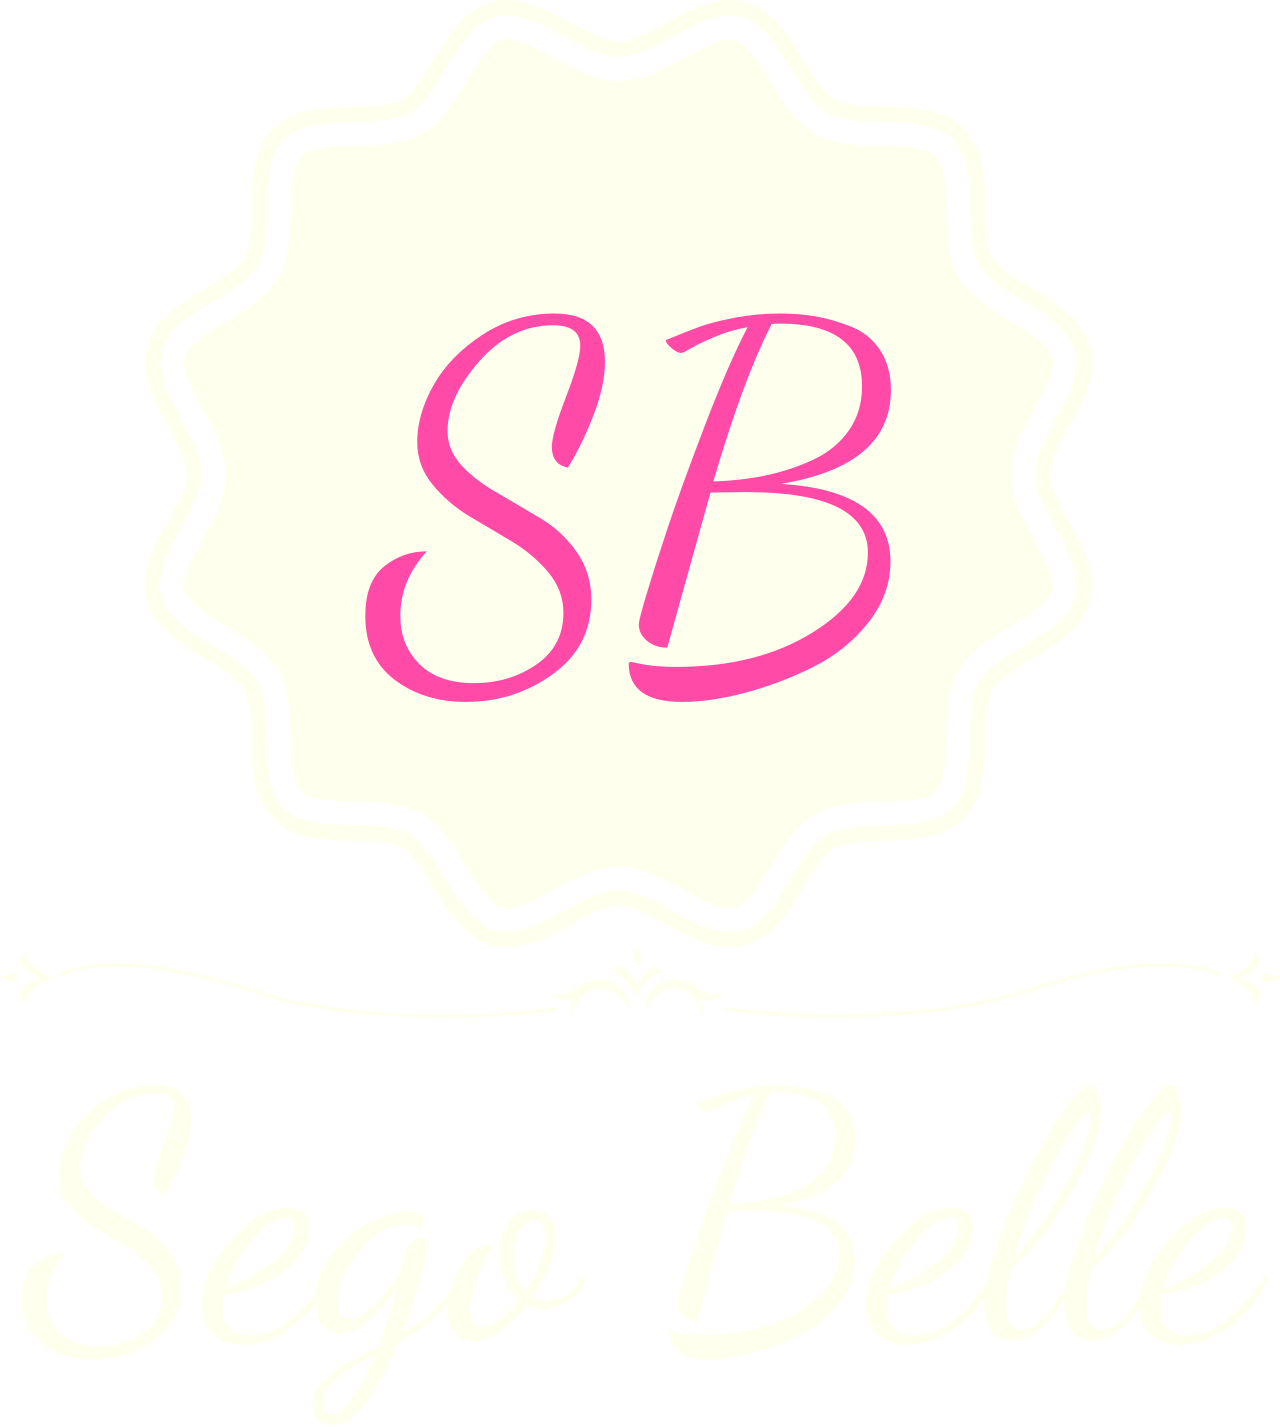 Sego Belle's logo